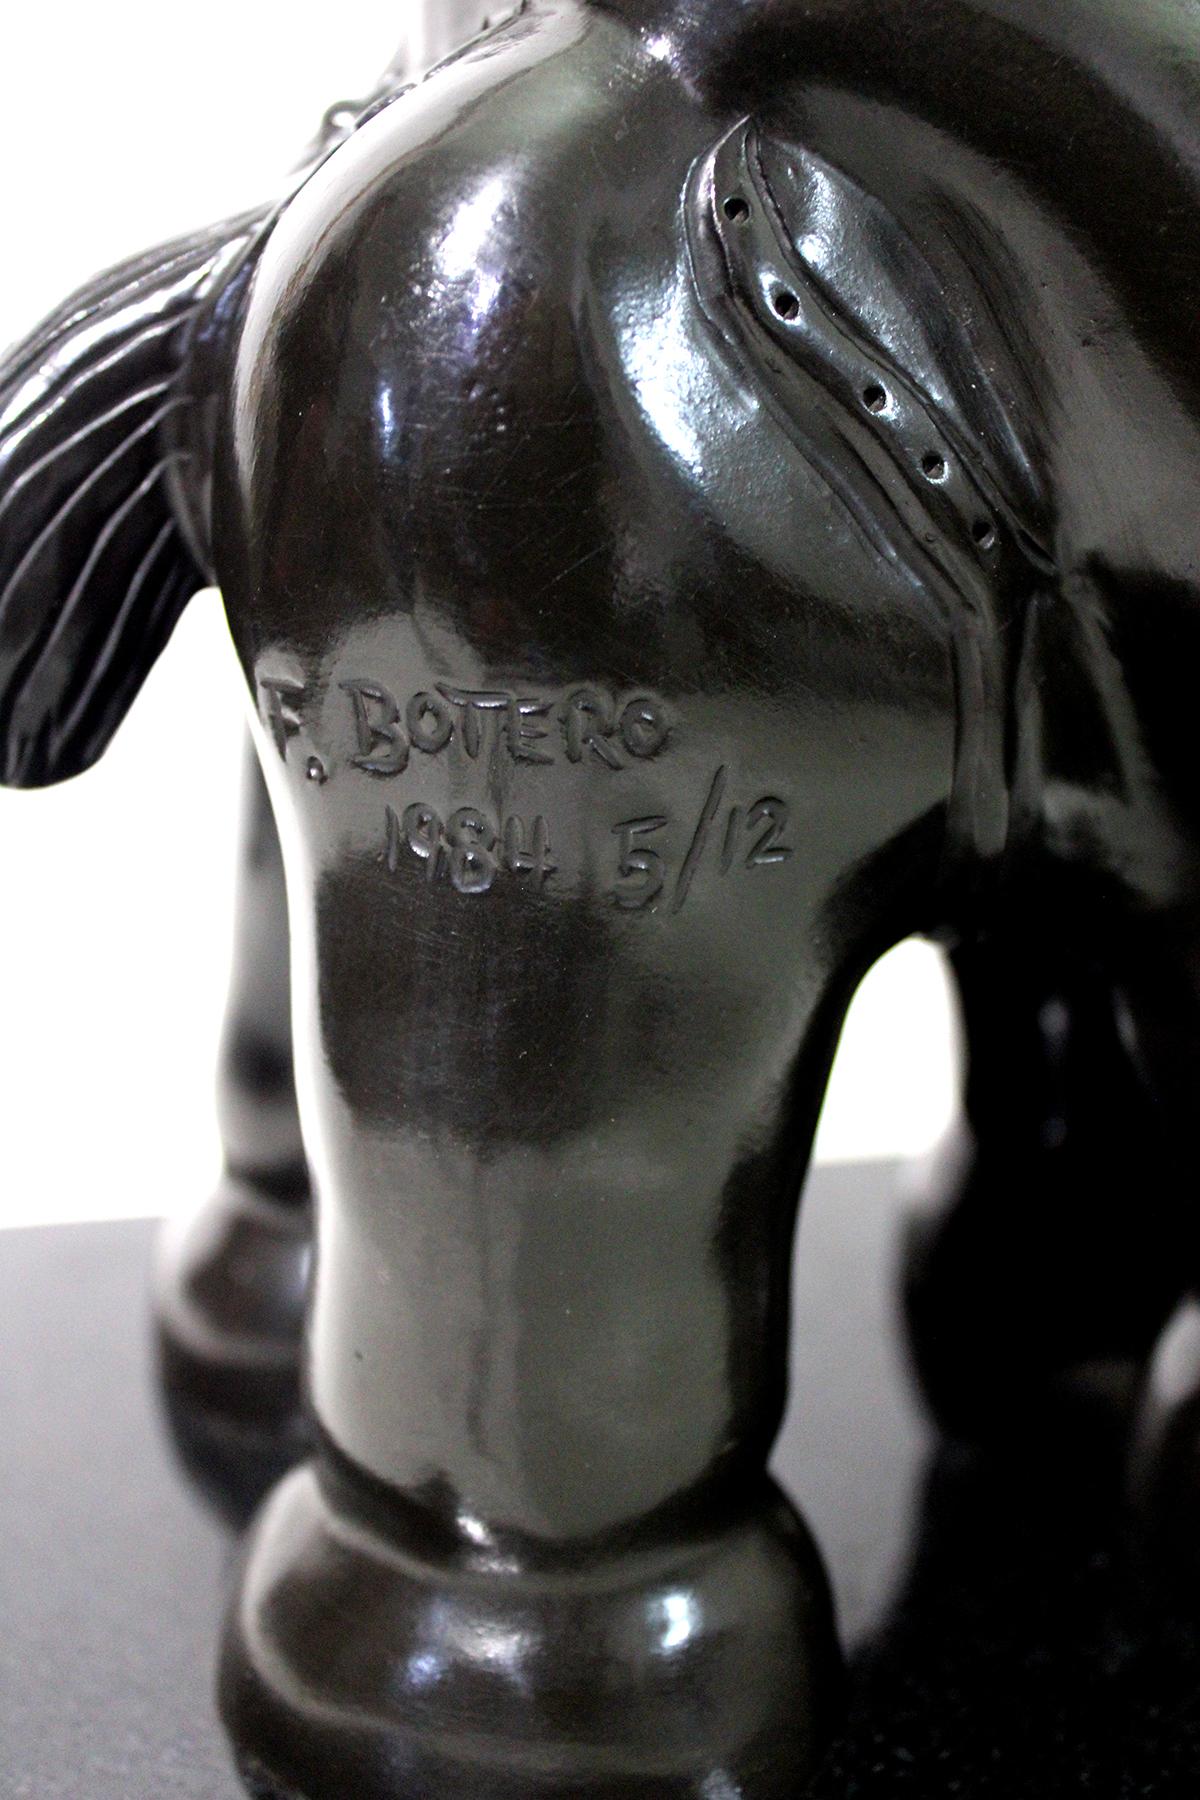 Nach Fernando Botero
Gegossene Bronzeskulptur von Fernando Botero, 1932 bis 2023, einem kolumbianischen Künstler, dessen charakteristischer Stil, der auch als Boterismo bekannt ist, Menschen und Figuren in großem, übertriebenem Volumen darstellt.